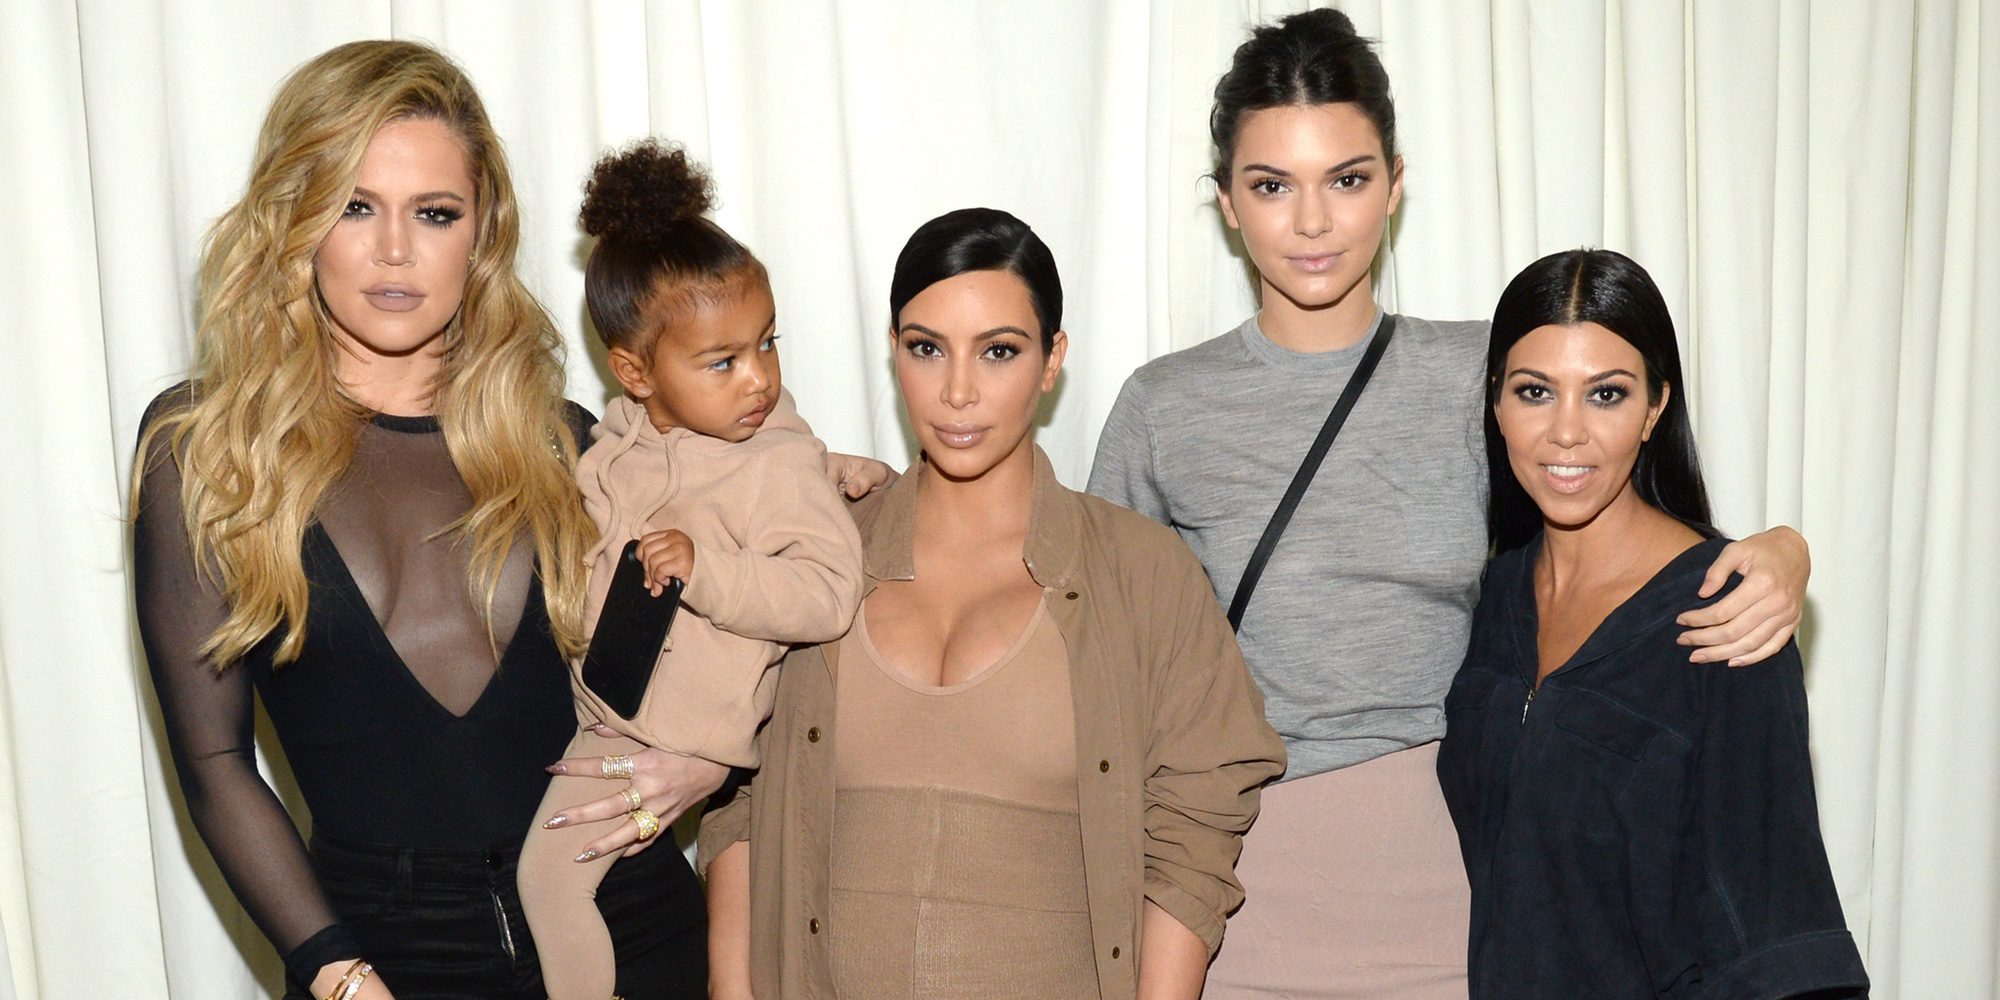 Kris Jenner negocia convertir 'Las Kardashian' en una serie de animación no apta para menores